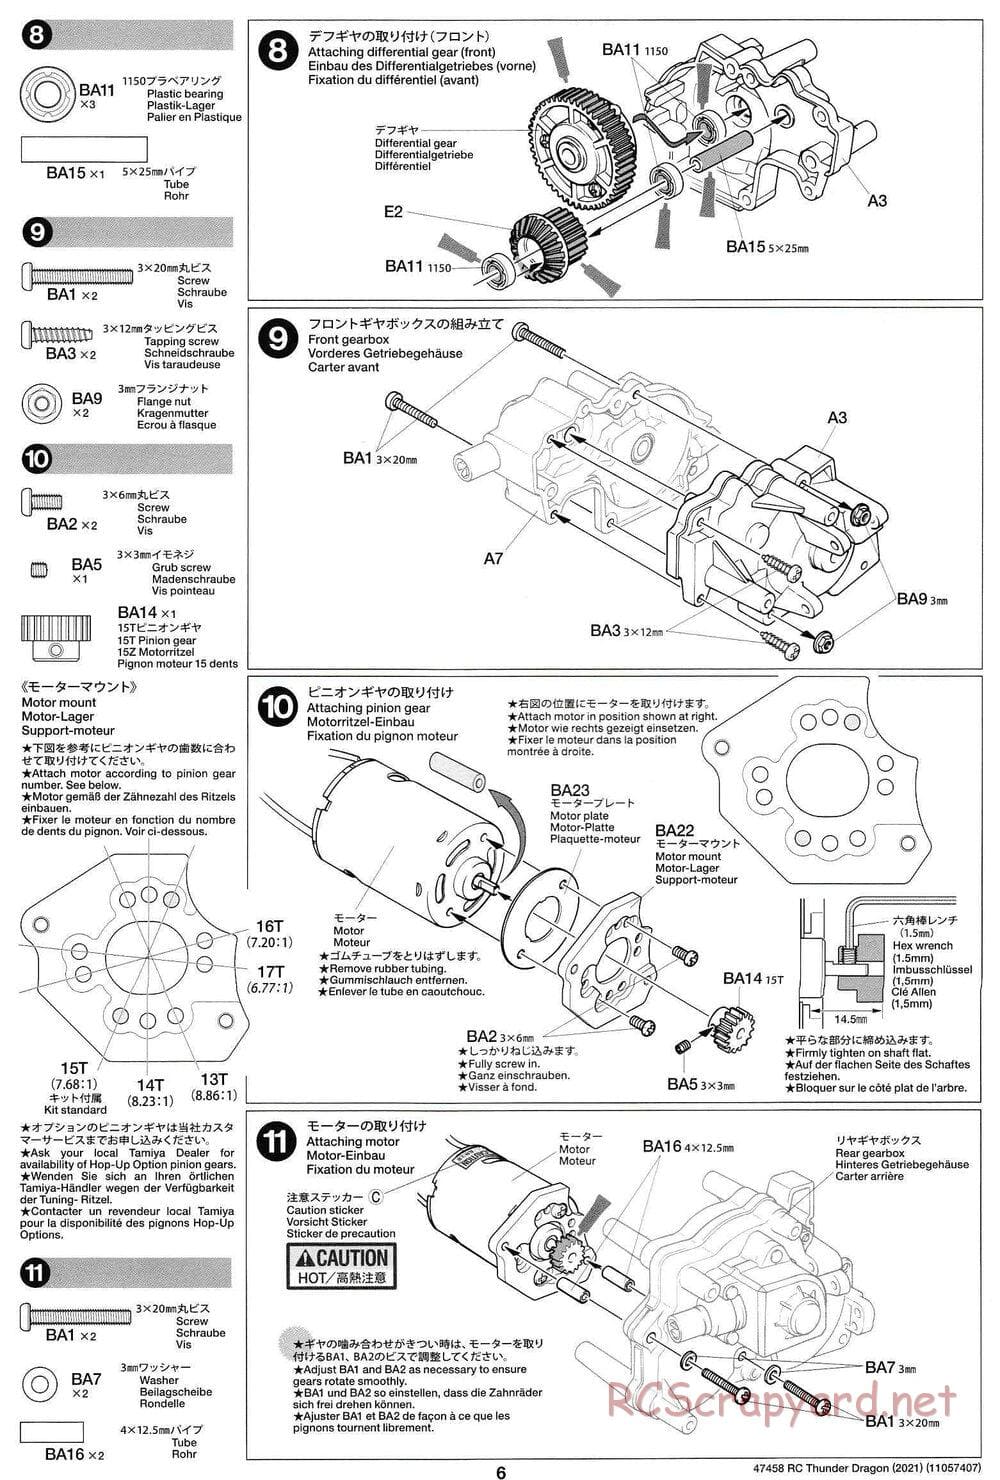 Tamiya - Thunder Dragon (2021) Chassis - Manual - Page 6